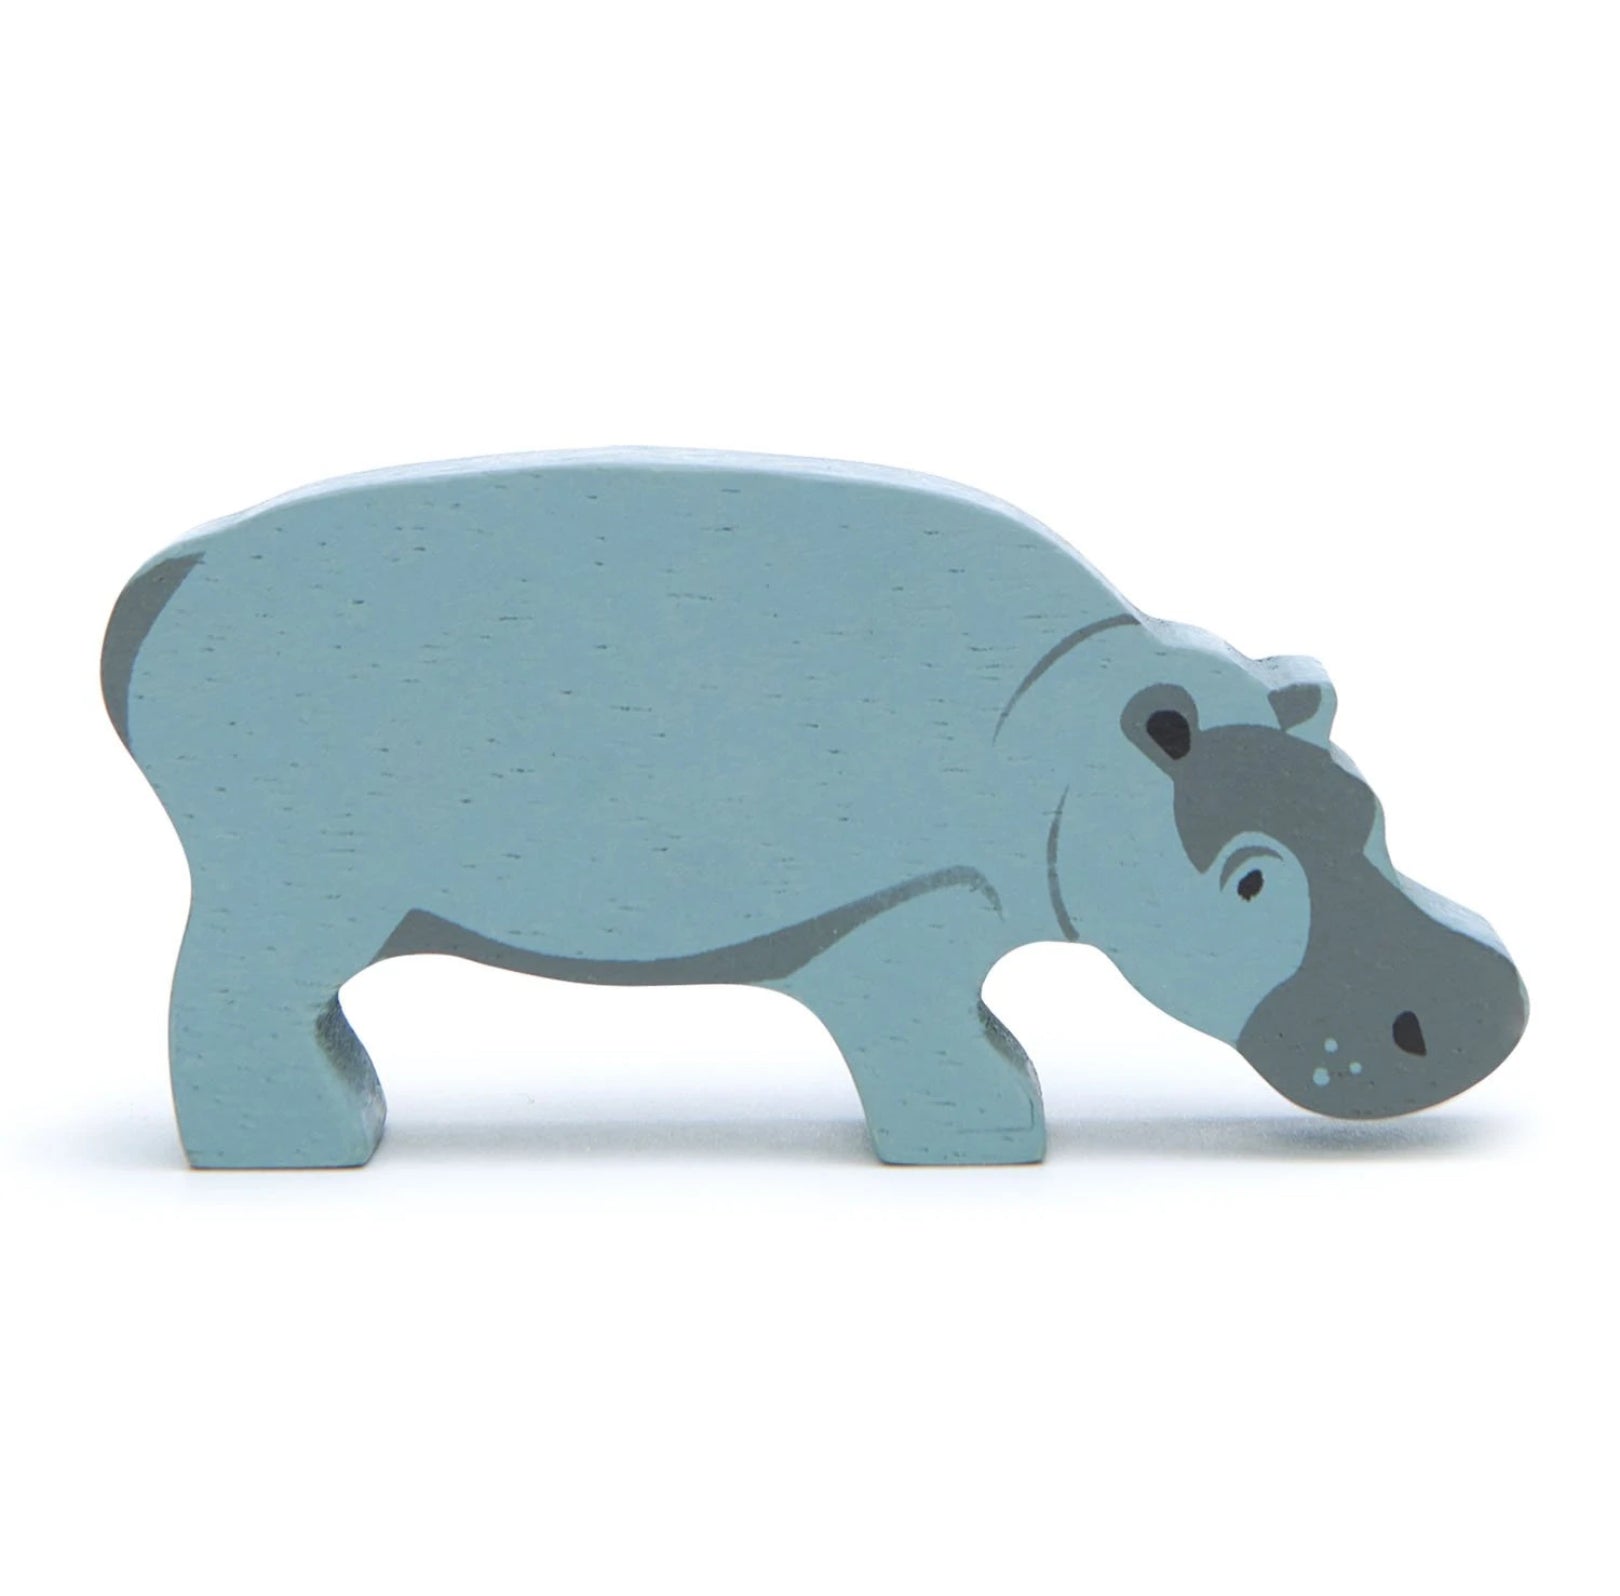 Tender Leaf Toys Safari Animals Hippopotamus  Wooden Toy